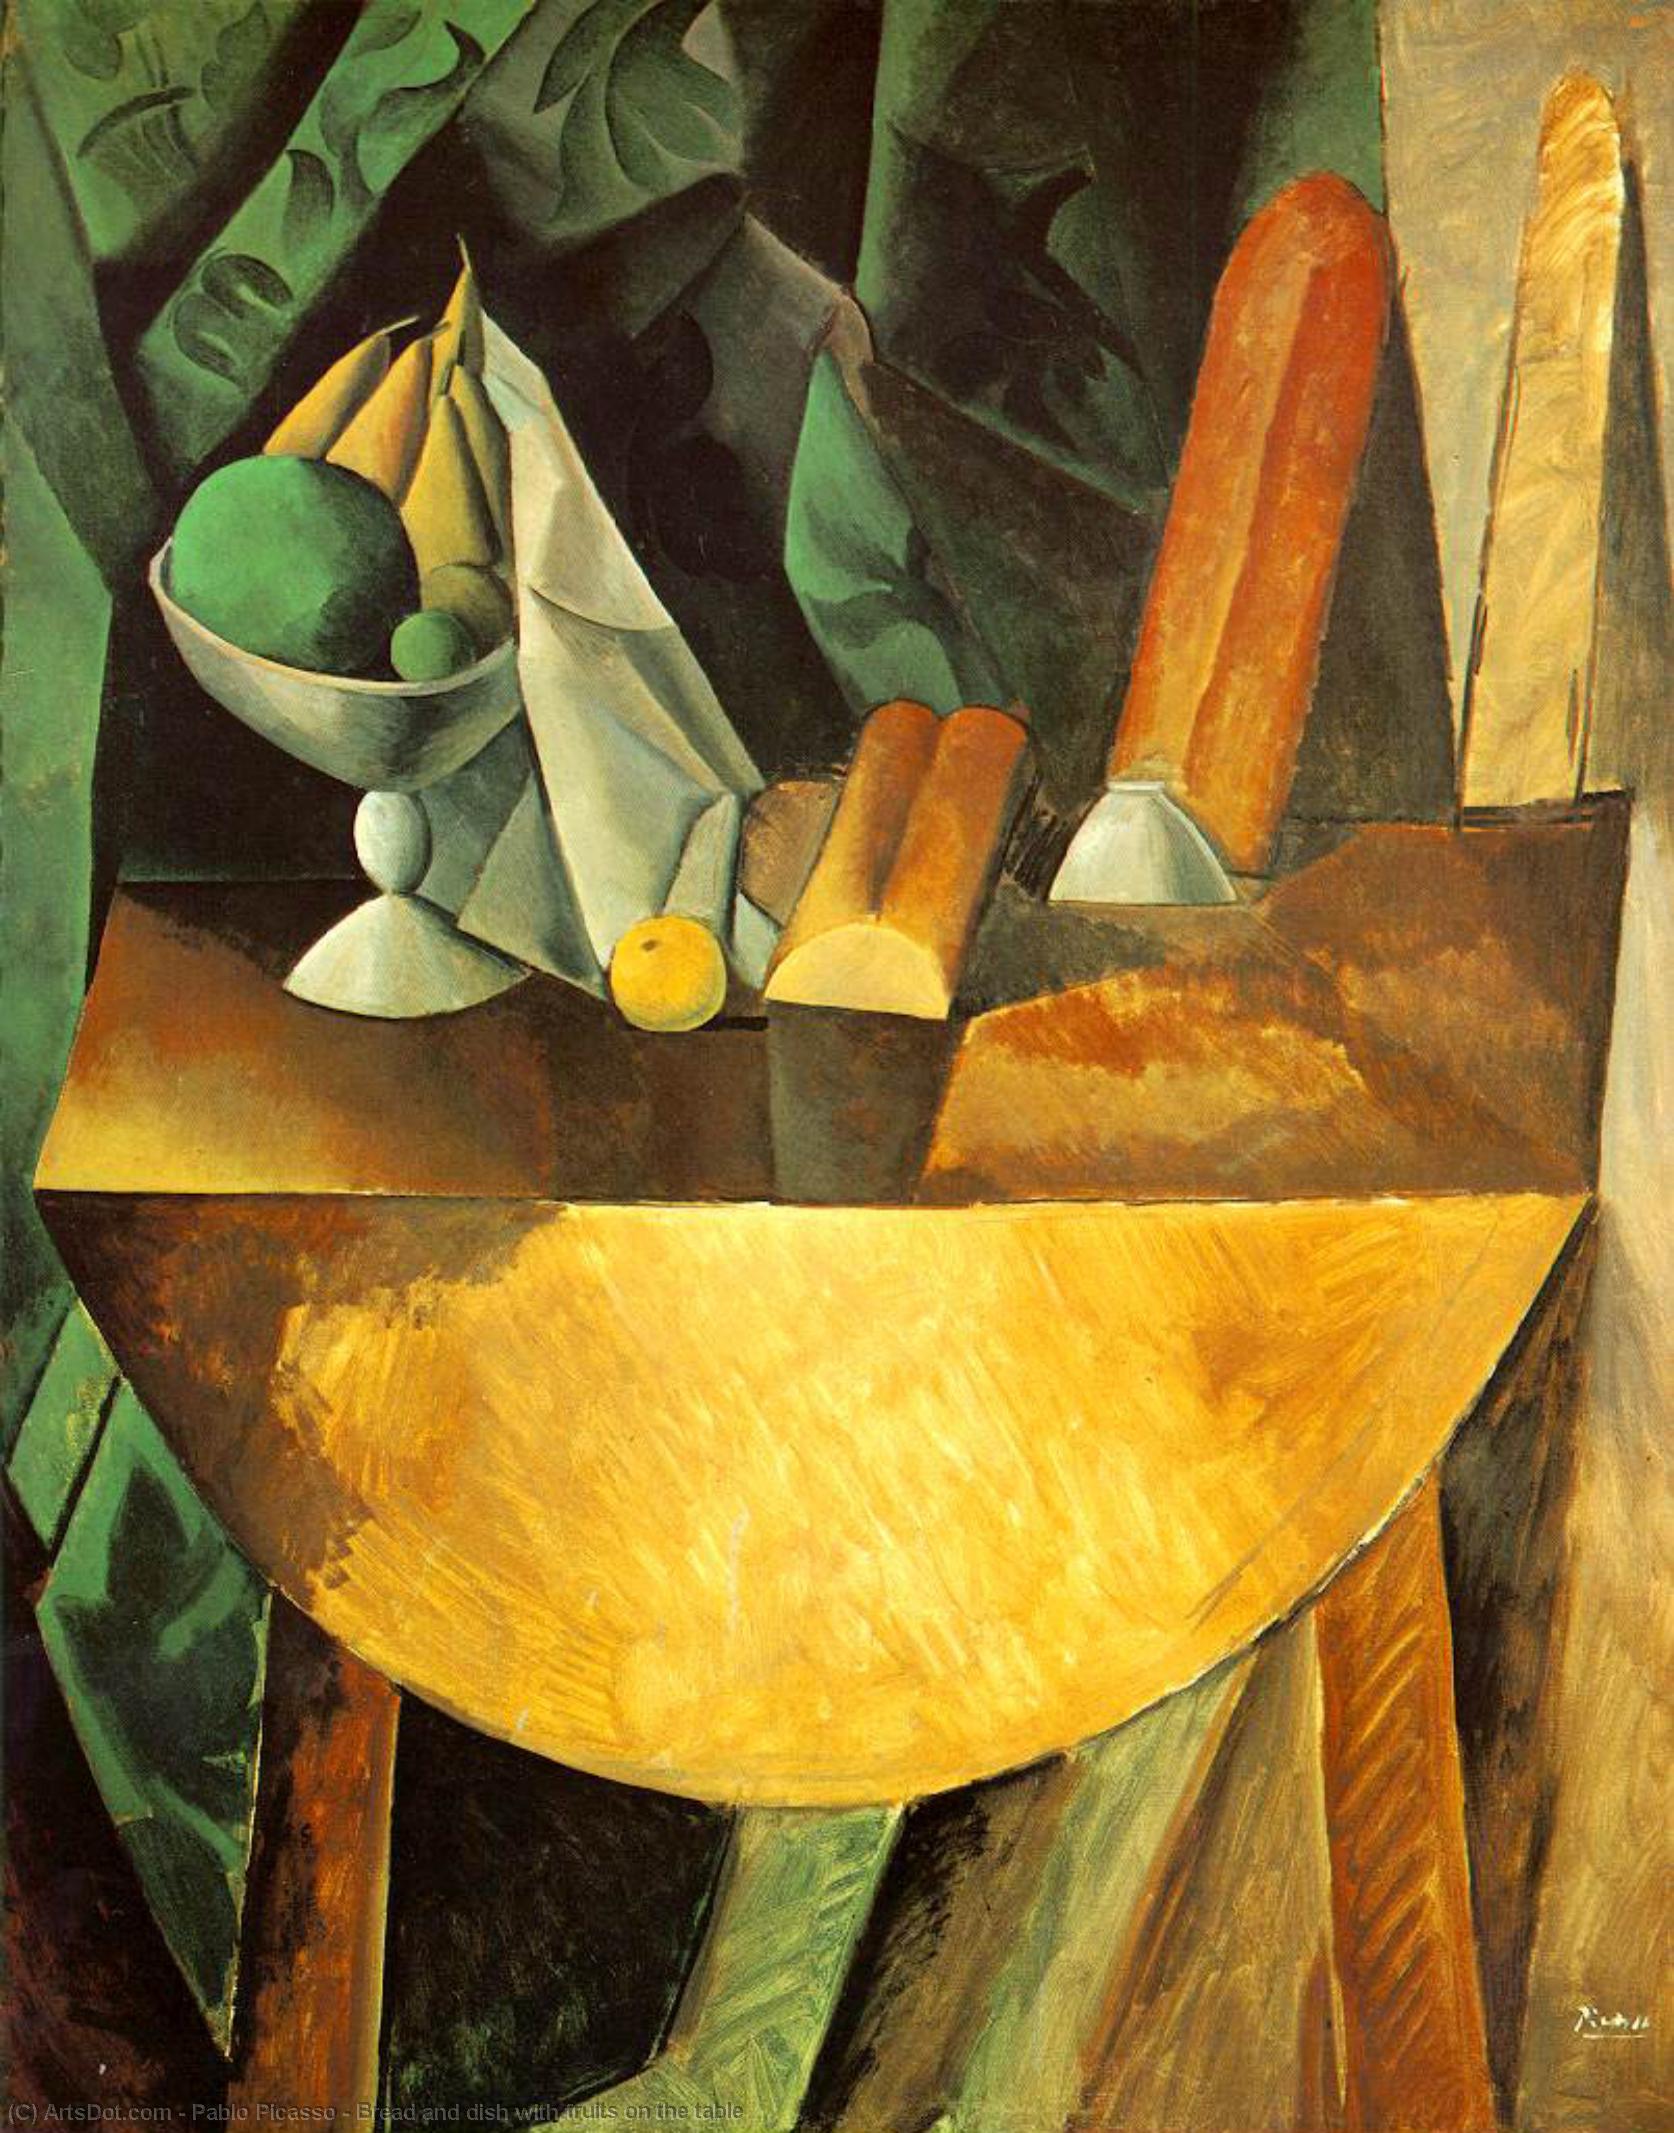 WikiOO.org – 美術百科全書 - 繪畫，作品 Pablo Picasso - 面包 和  菜  与  水果  对  的   表